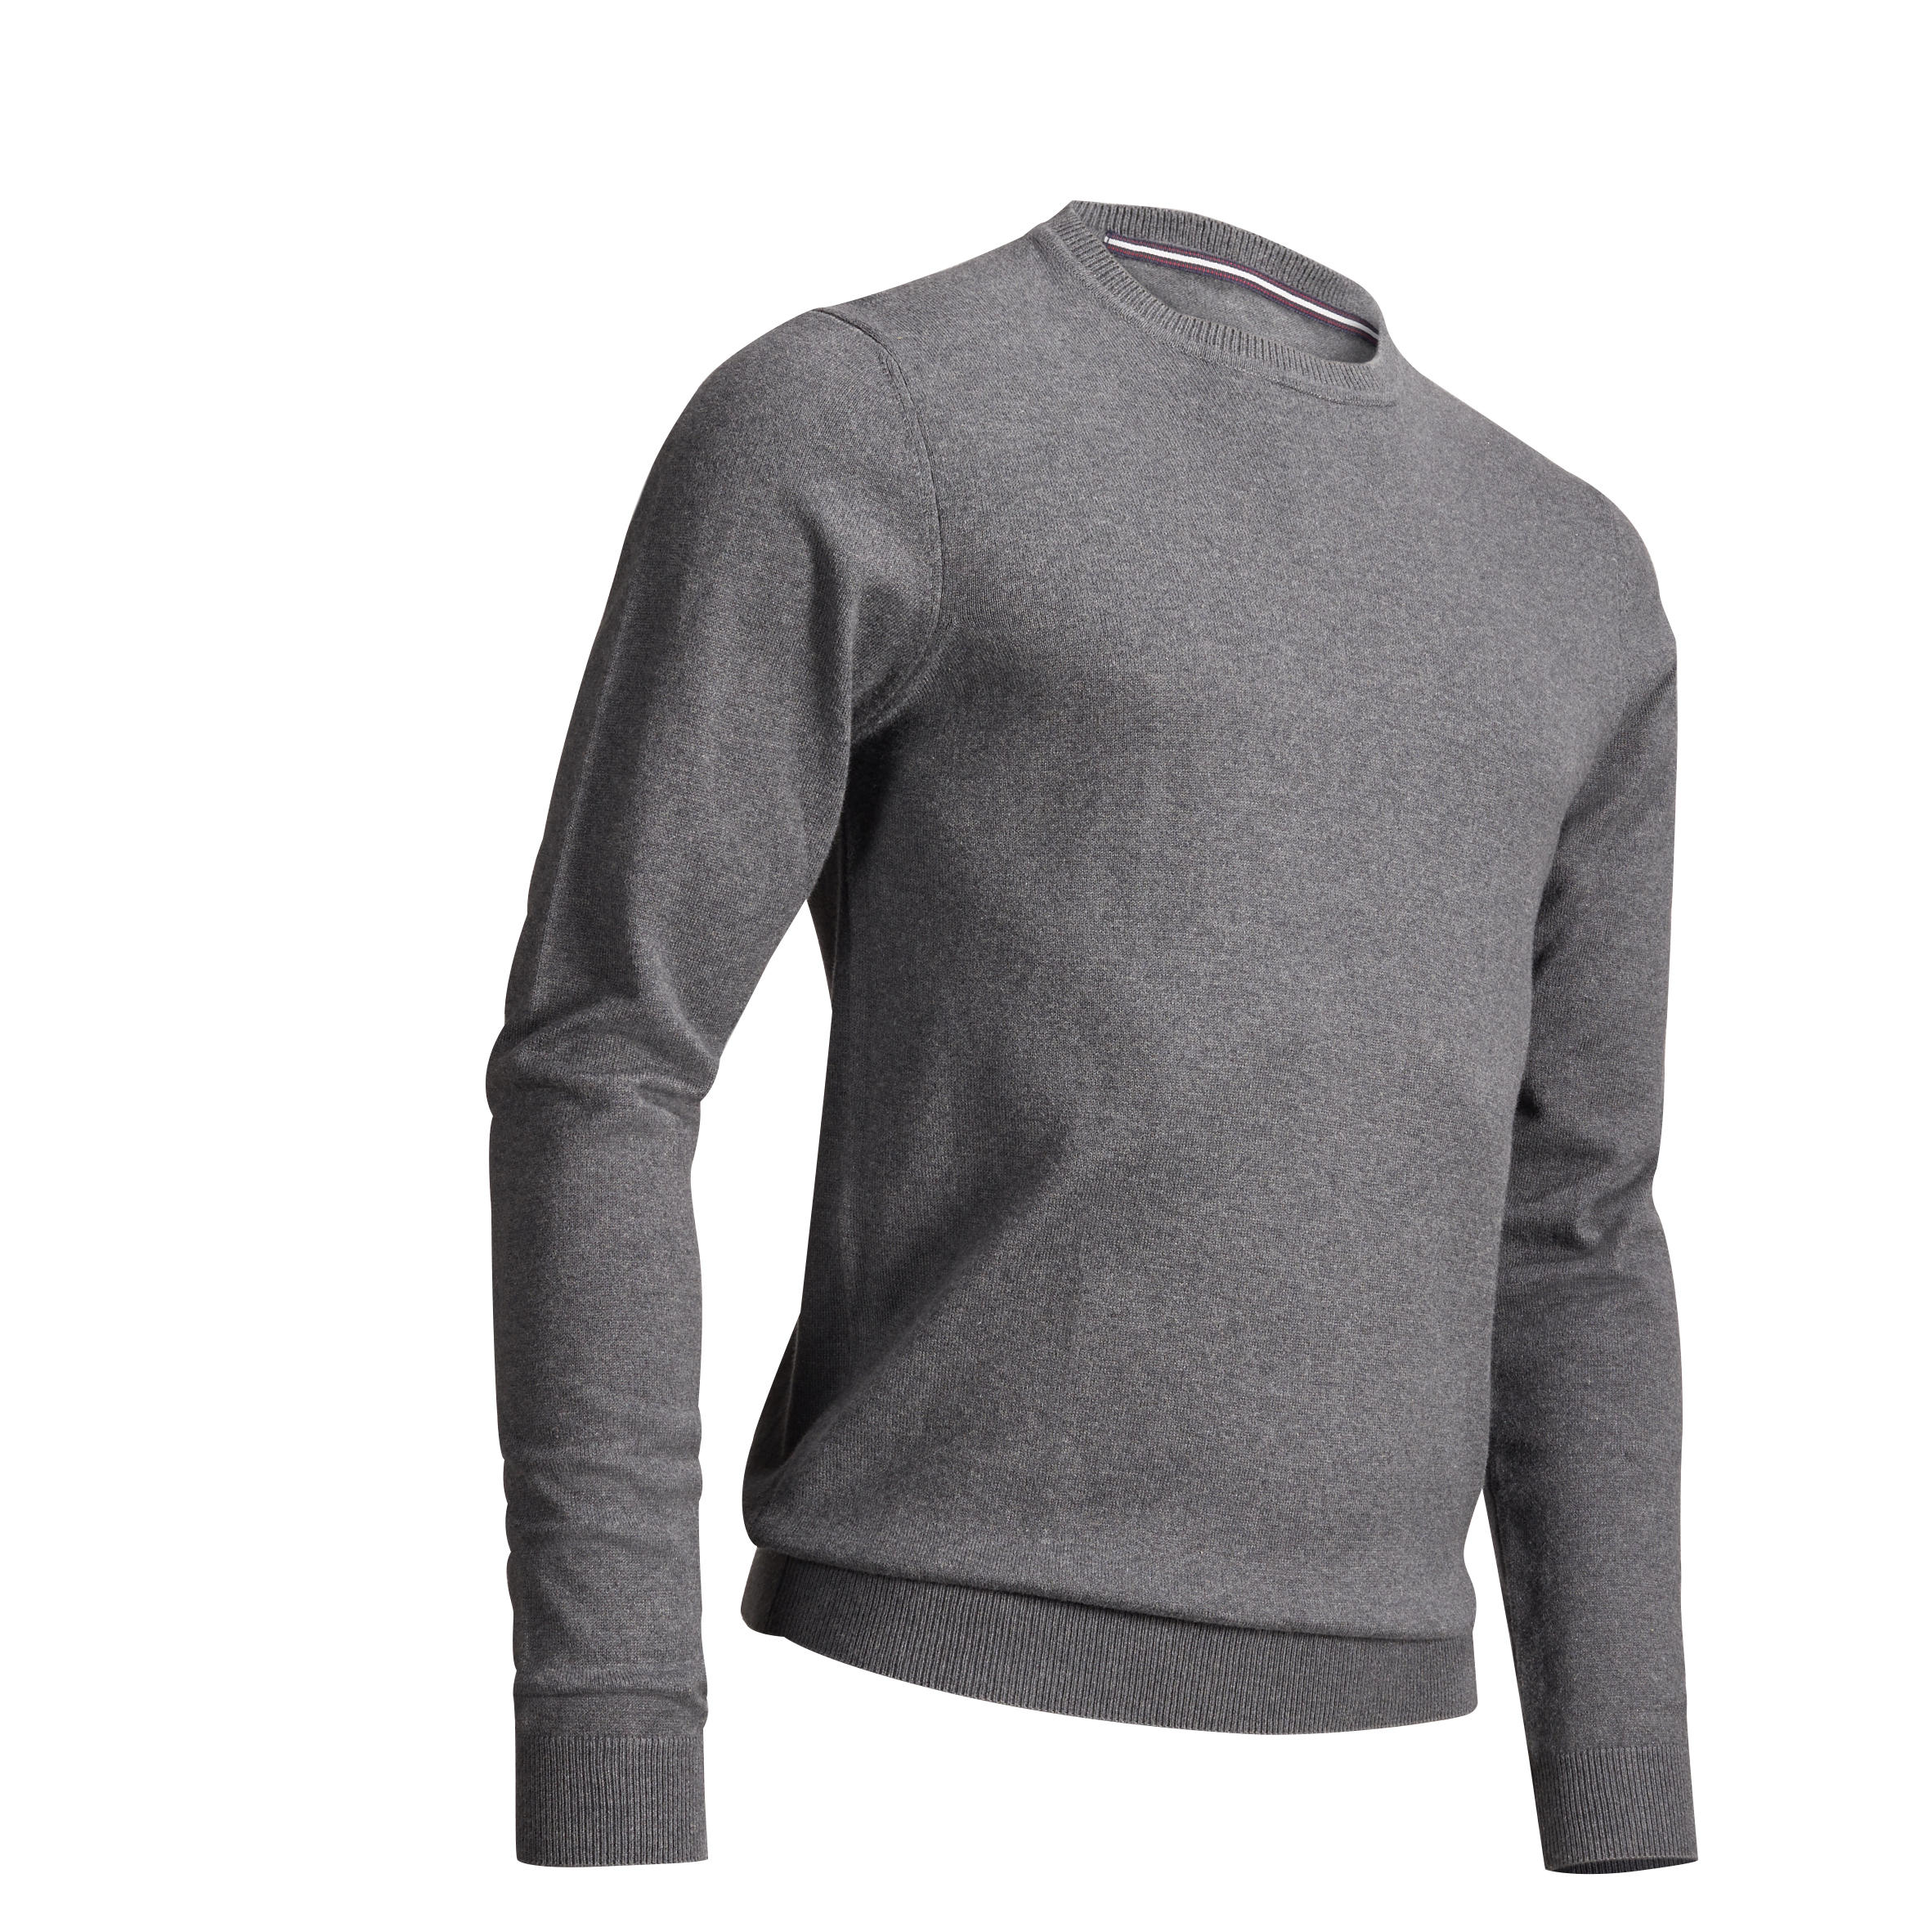 Mens Sweatshirts - Buy Fleece and 